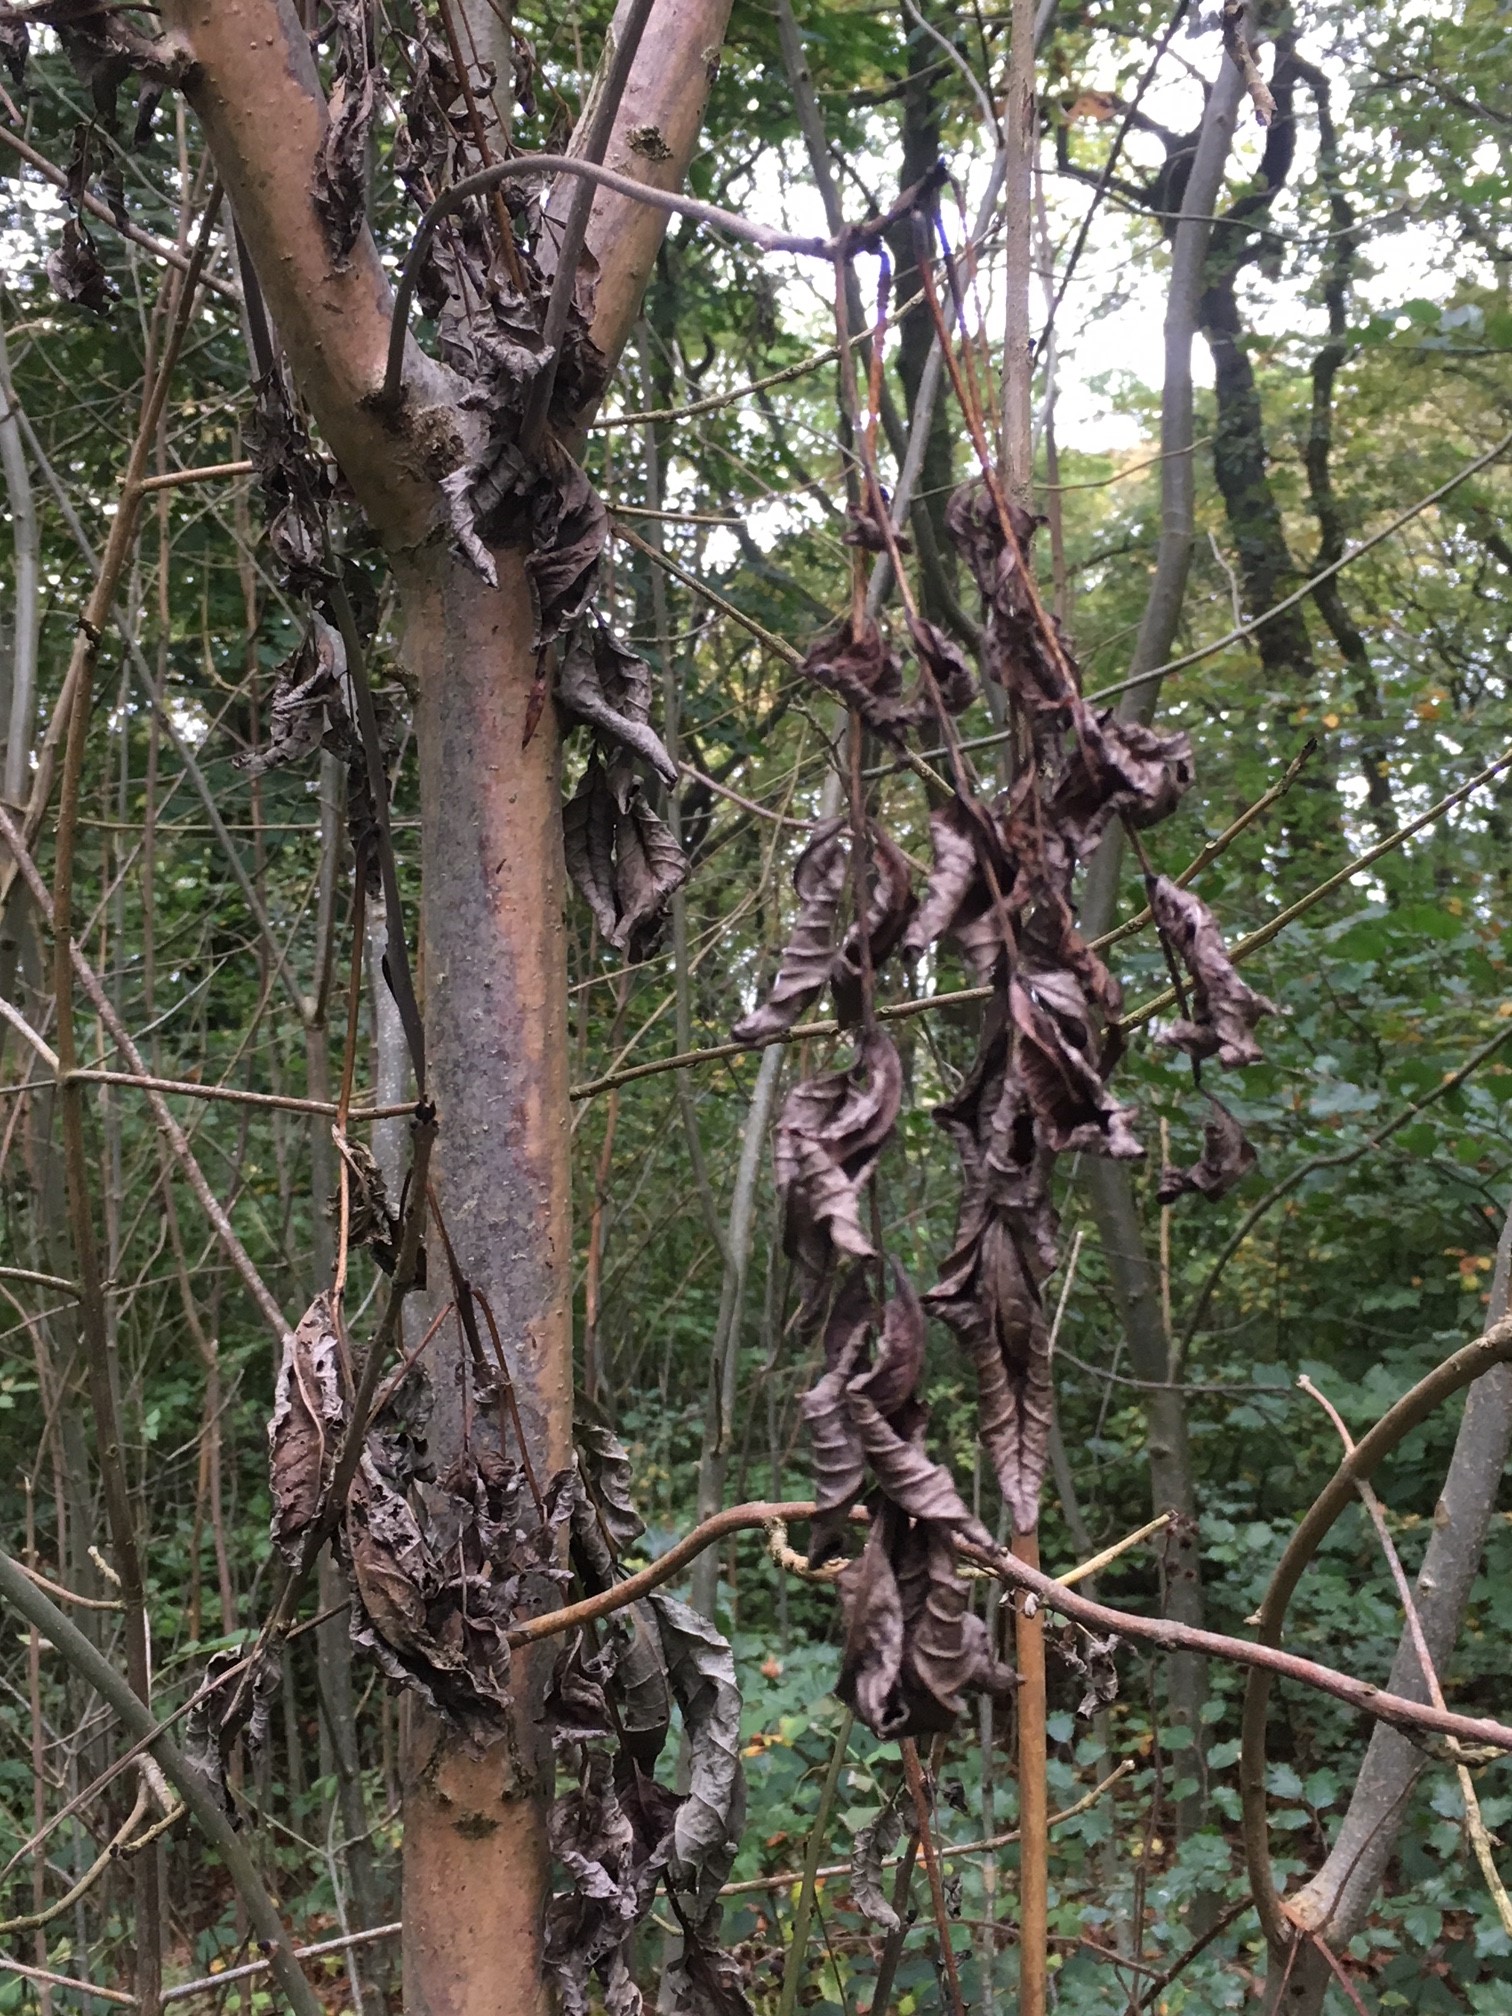 Leaves affected by ash dieback.